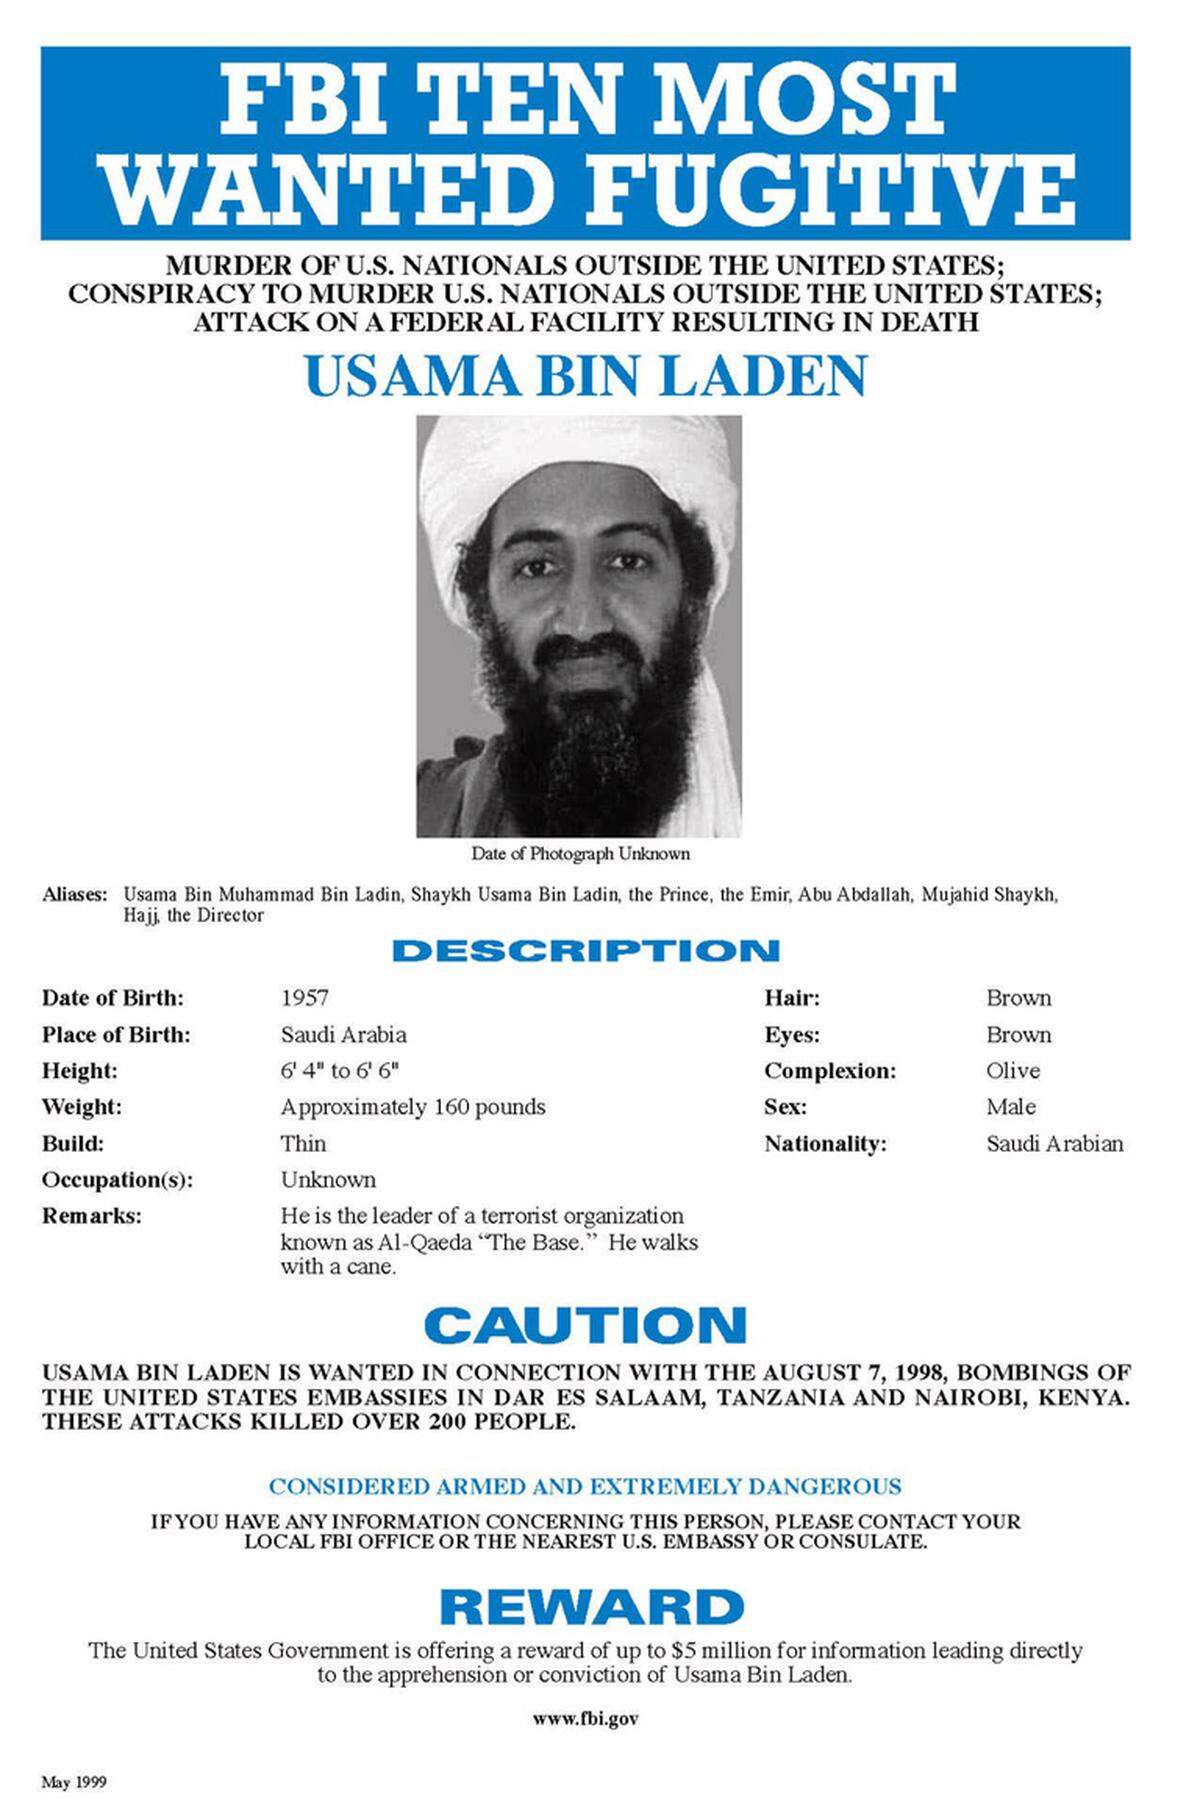 Der erste große Anschlag, der Bin Laden zur Last gelegt wird, waren die Bombenattentate auf die US-Botschaften in Kenia und Tansania, bei denen im August 1998 insgesamt 224 Menschen getötet wurden. 1999 setzte ihn die US-Bundespolizei auf die Liste der zehn meistgesuchten Verbrecher der Welt.